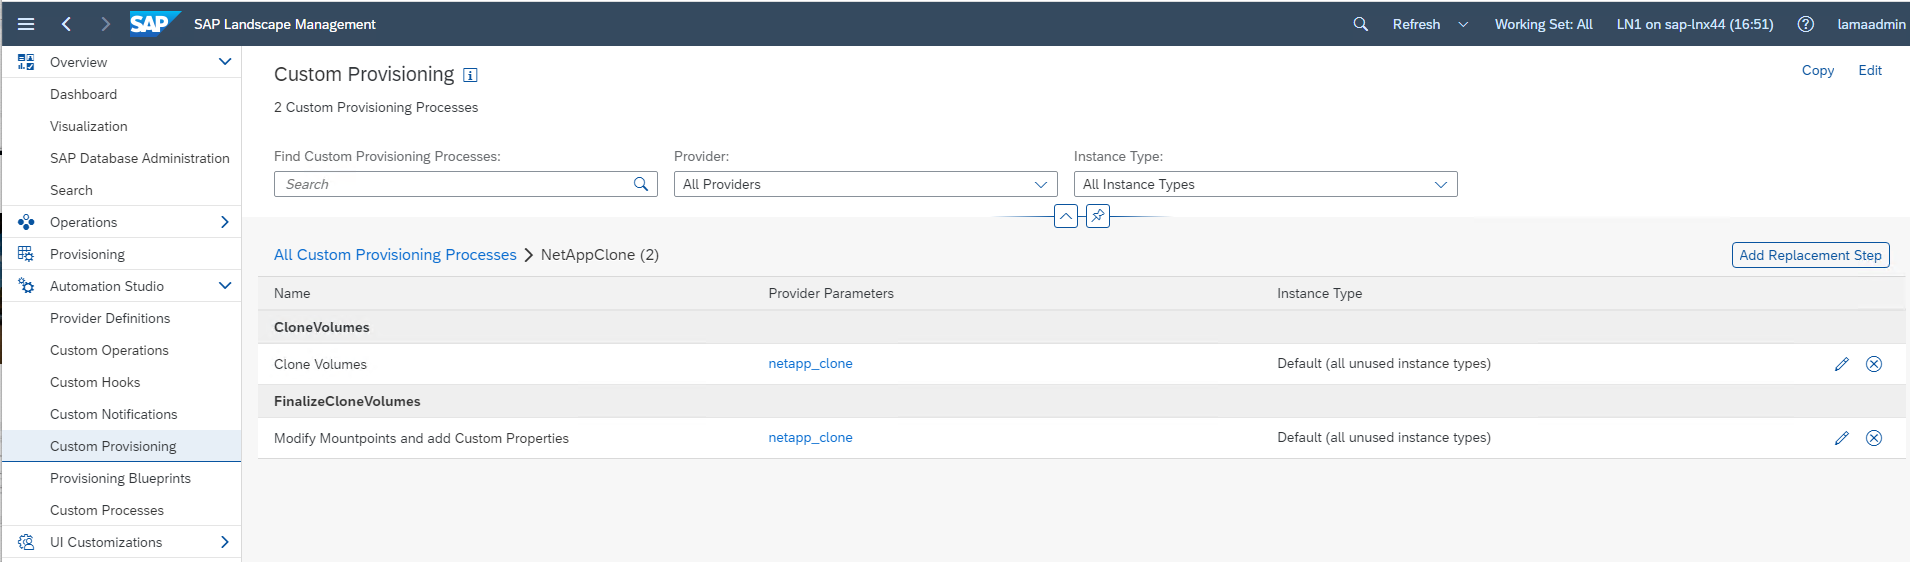 Captura de pantalla de la pantalla de configuración de aprovisionamiento personalizado. En la lista de procesos, CloneVolumes y FinalizeCloneVolumes.